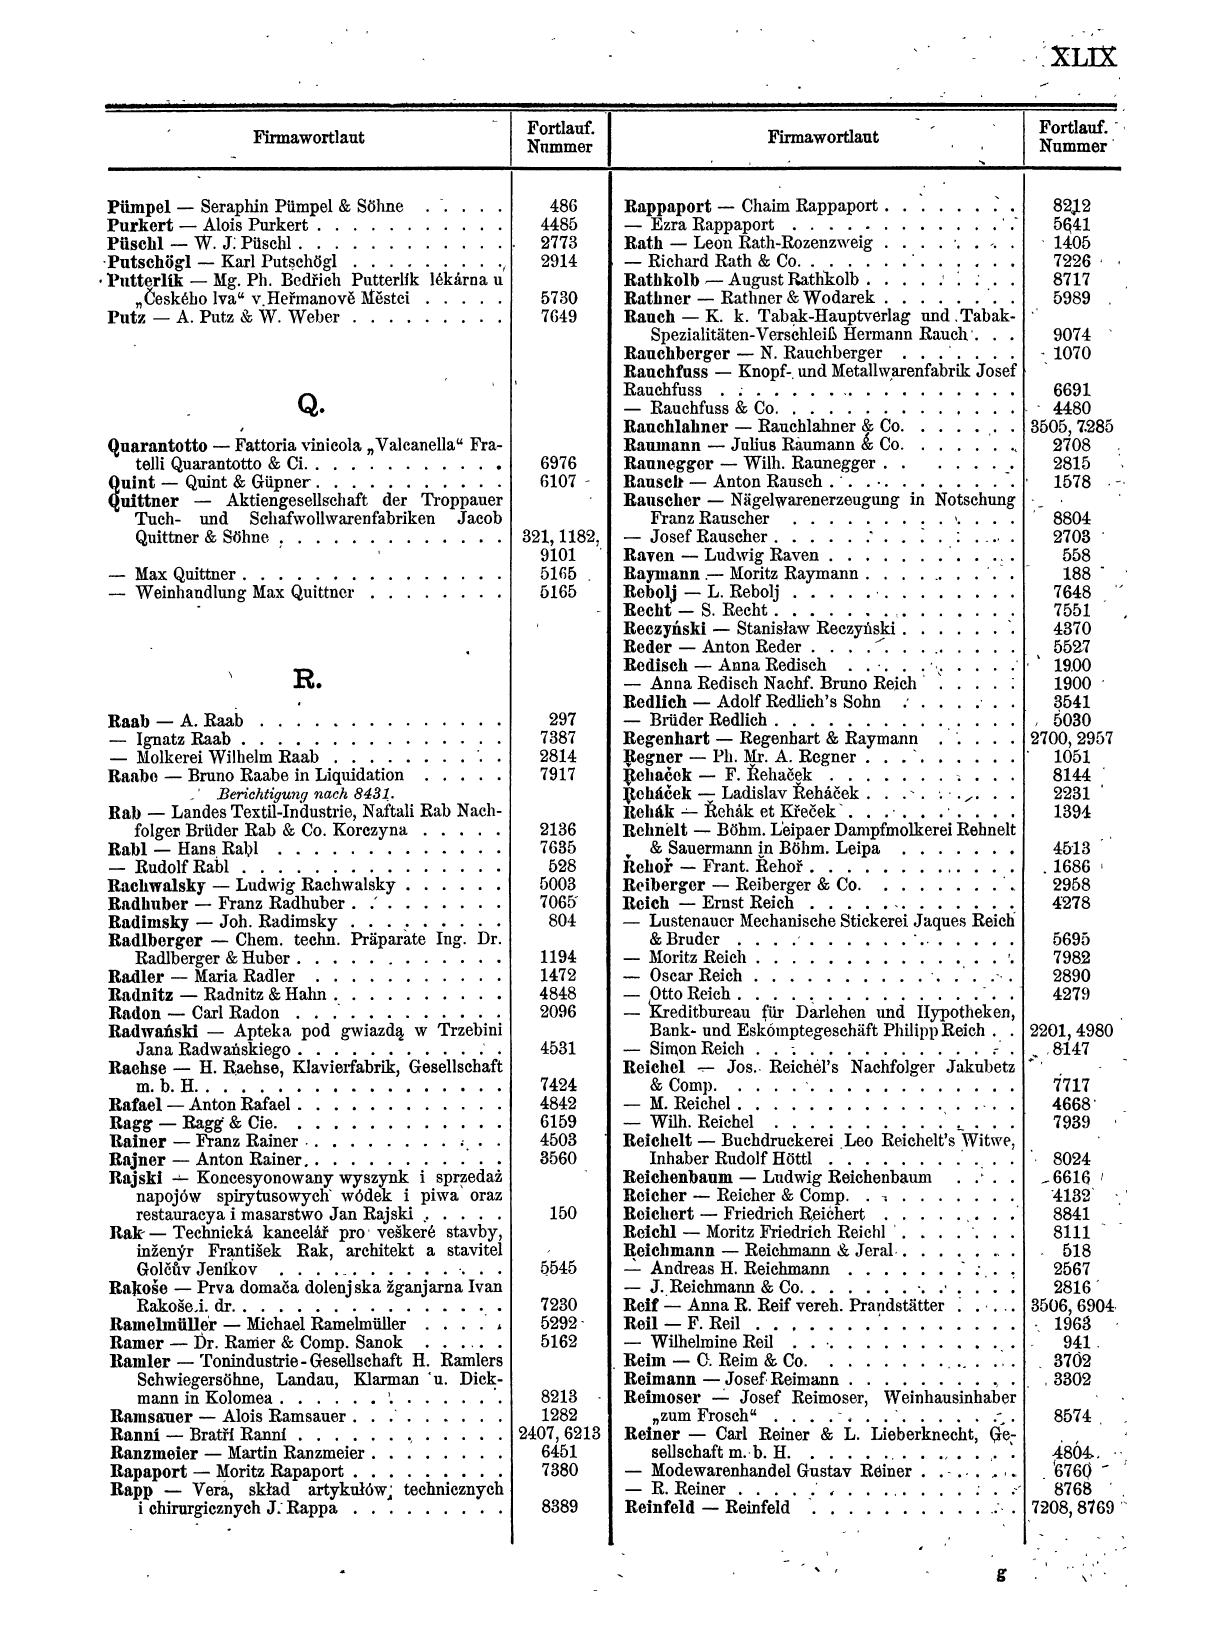 Zentralblatt für die Eintragungen in das Handelsregister 1913, Teil 1 - Seite 57